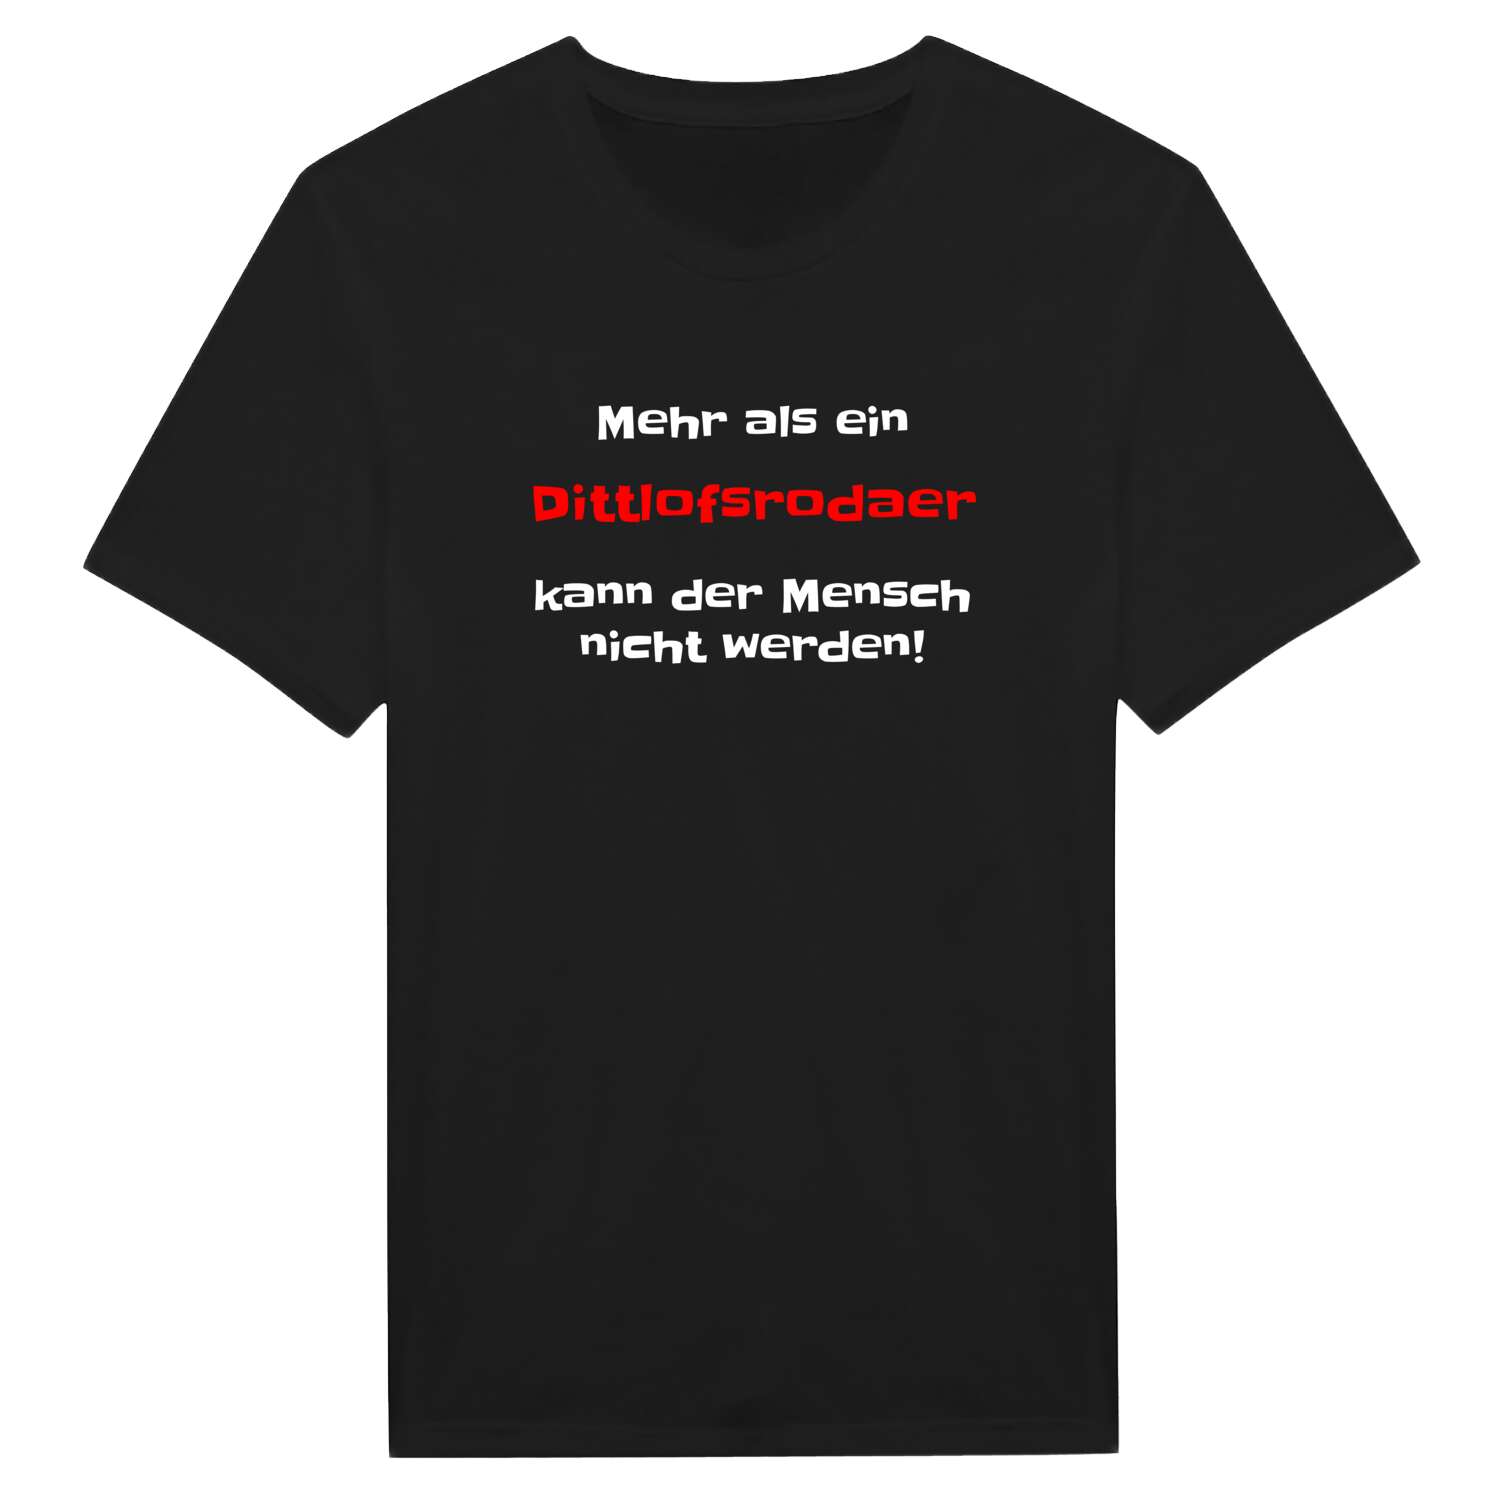 Dittlofsroda T-Shirt »Mehr als ein«